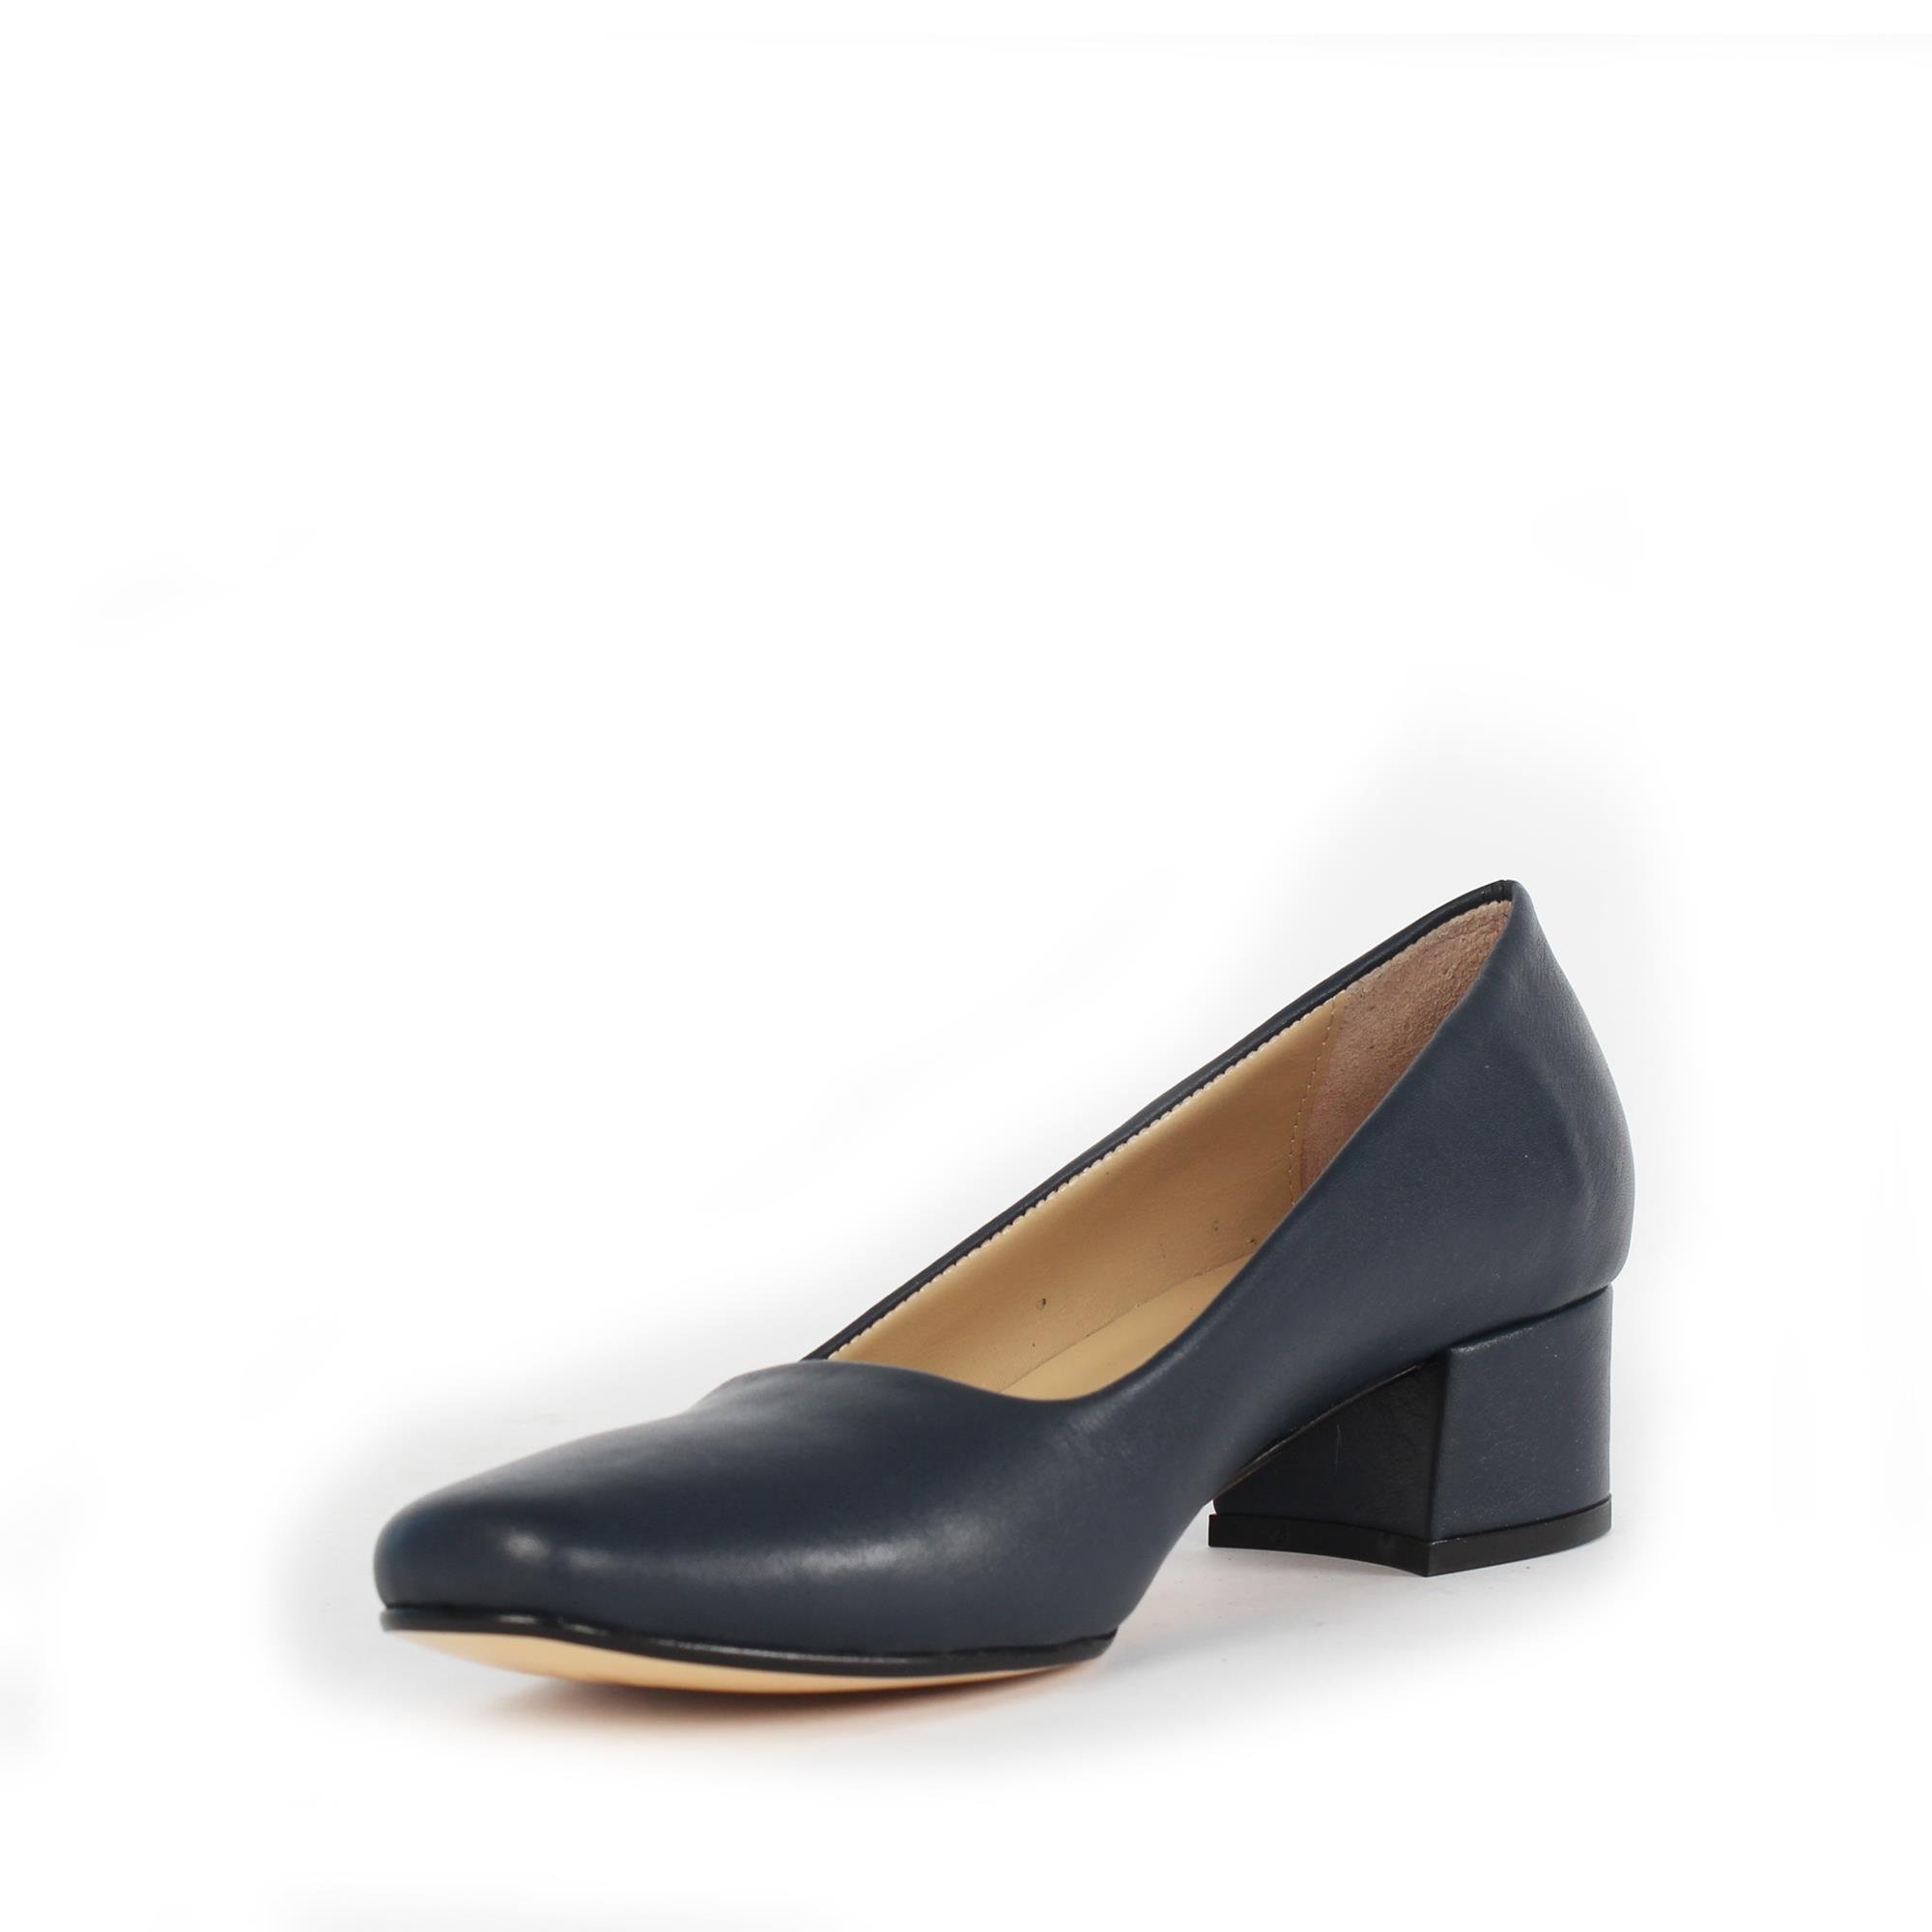 Lacivert Topuklu Klasik Kadın Ayakkabı 586 30704-16536 | Celal Gültekin